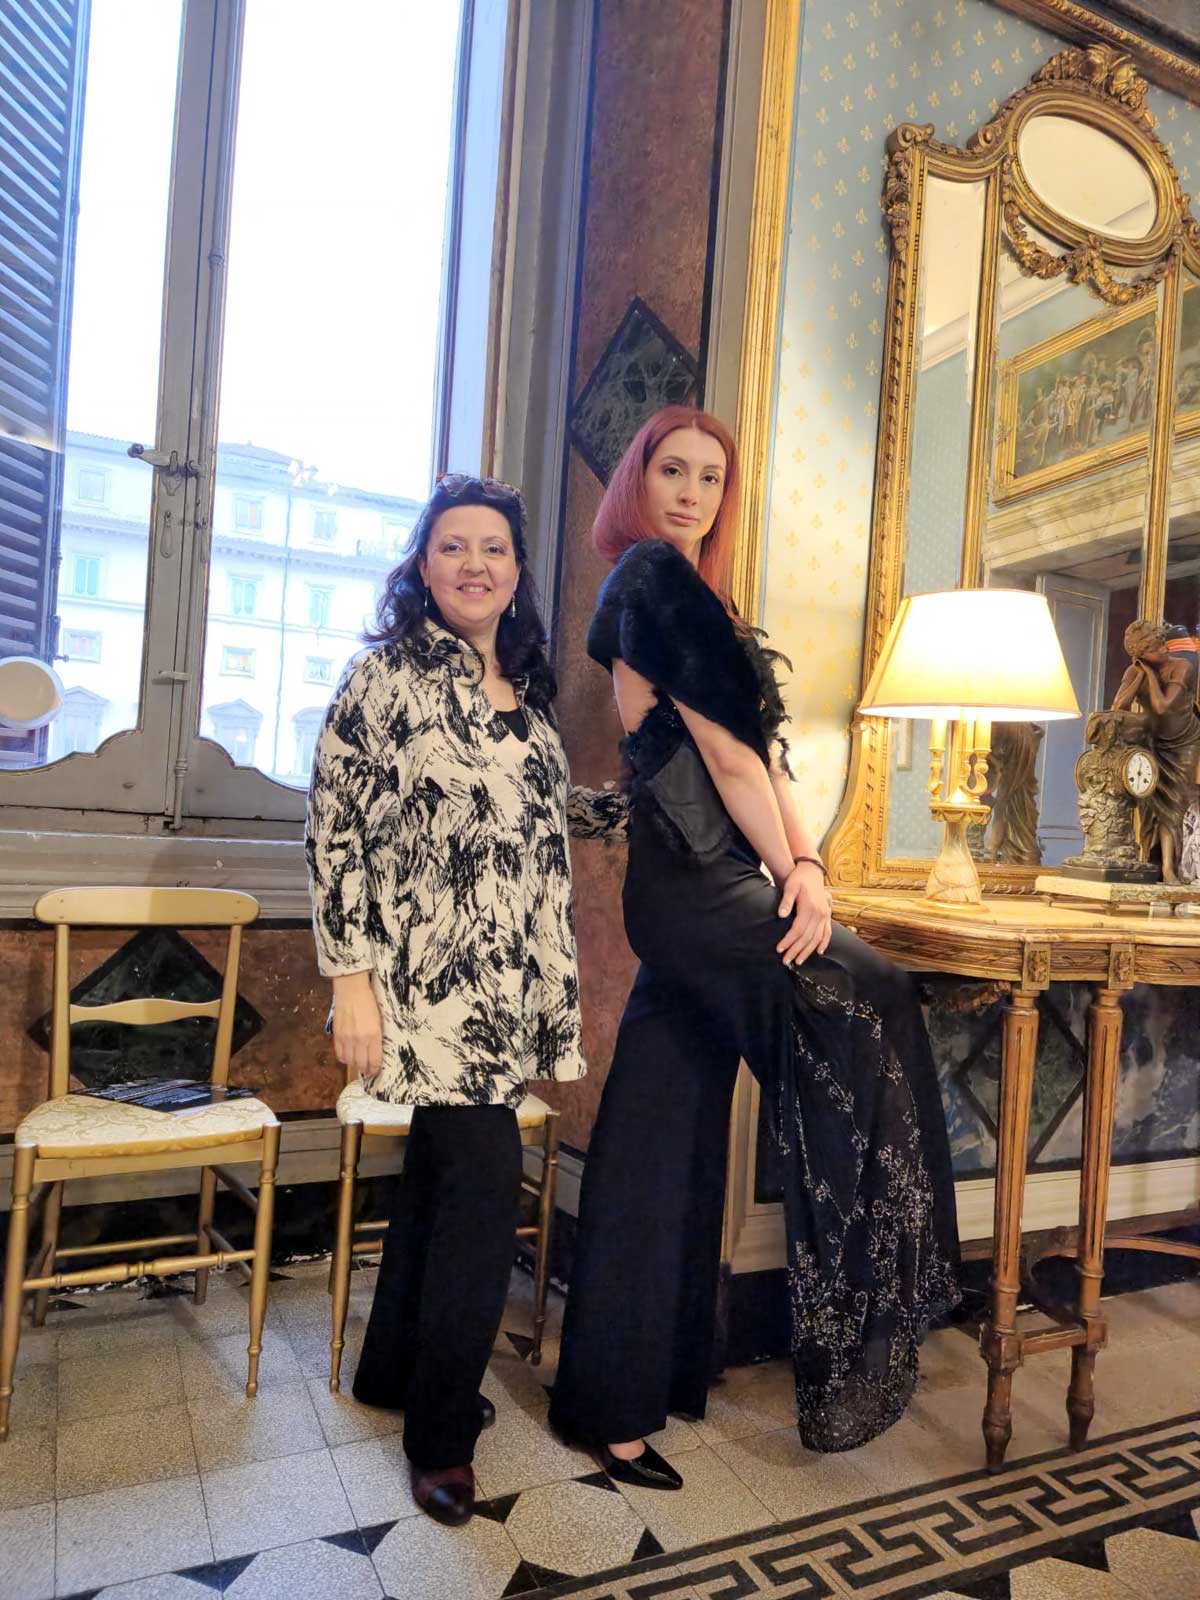 Sfilata abiti donna modelle a Palazzo Ferraioli - posa con la stilista modella con abito in nero